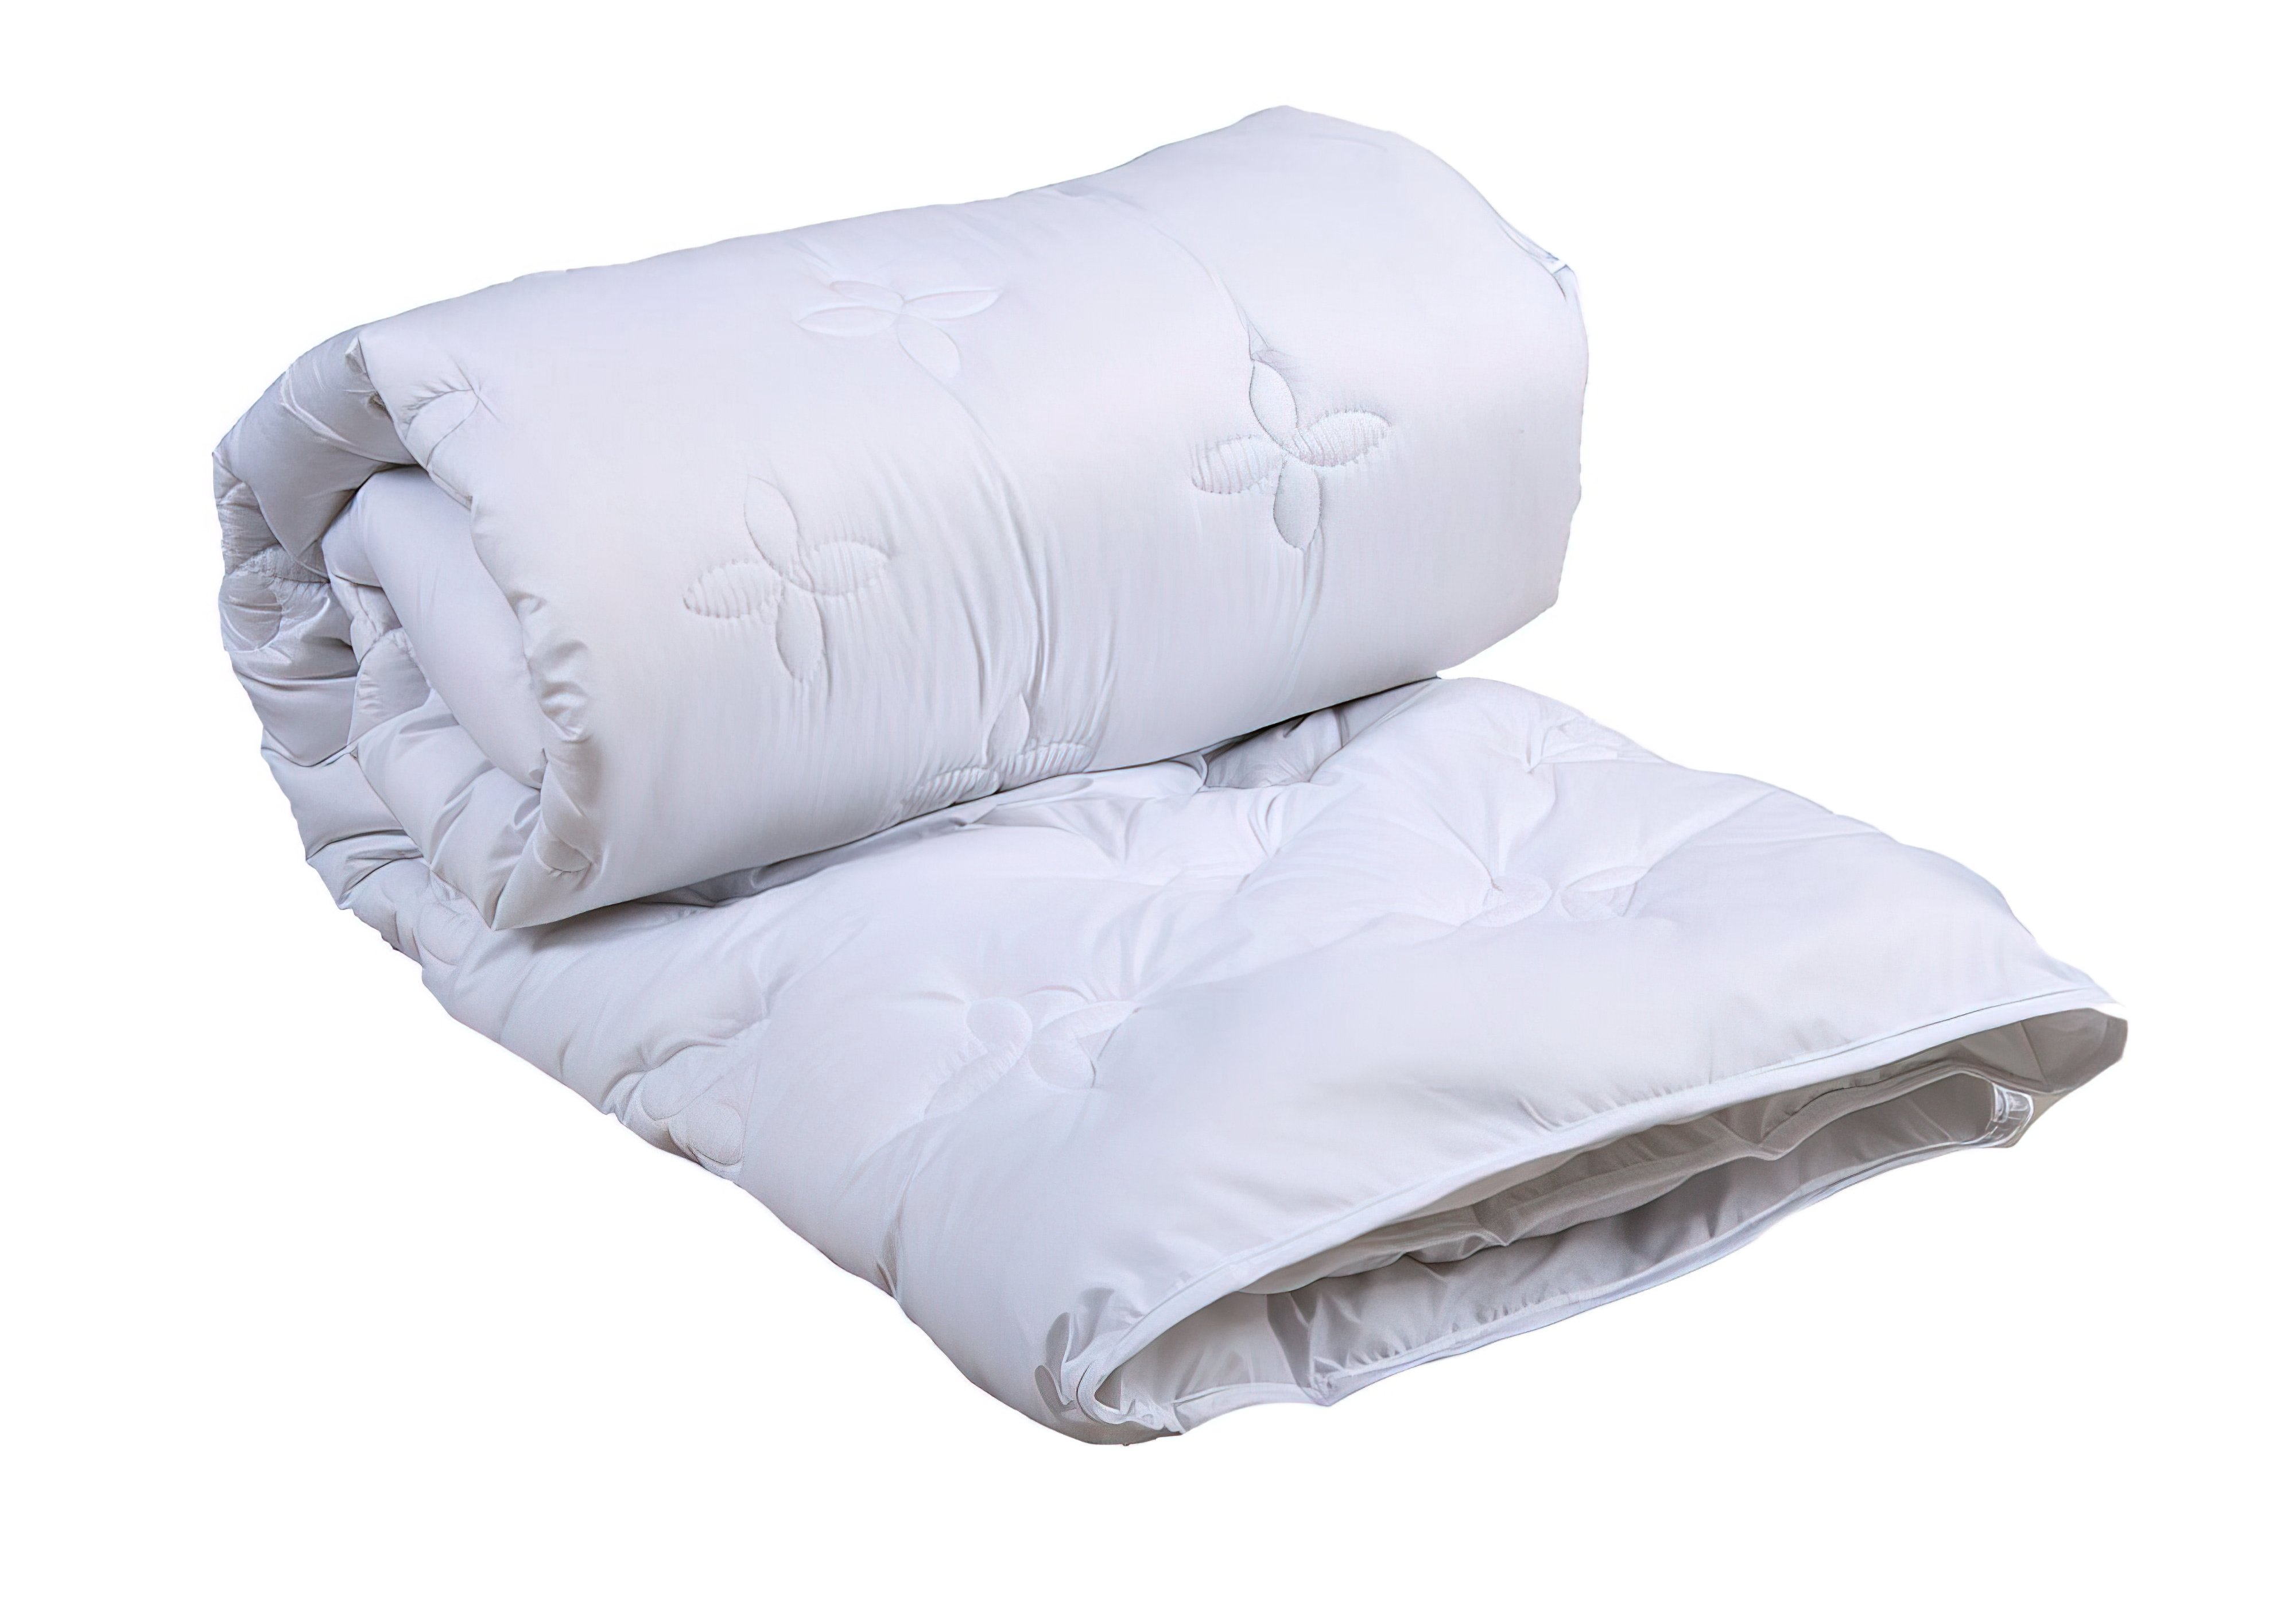 Одеяло Cotton Delicate белый полуторное Lotus, Количество спальных мест Полуторное